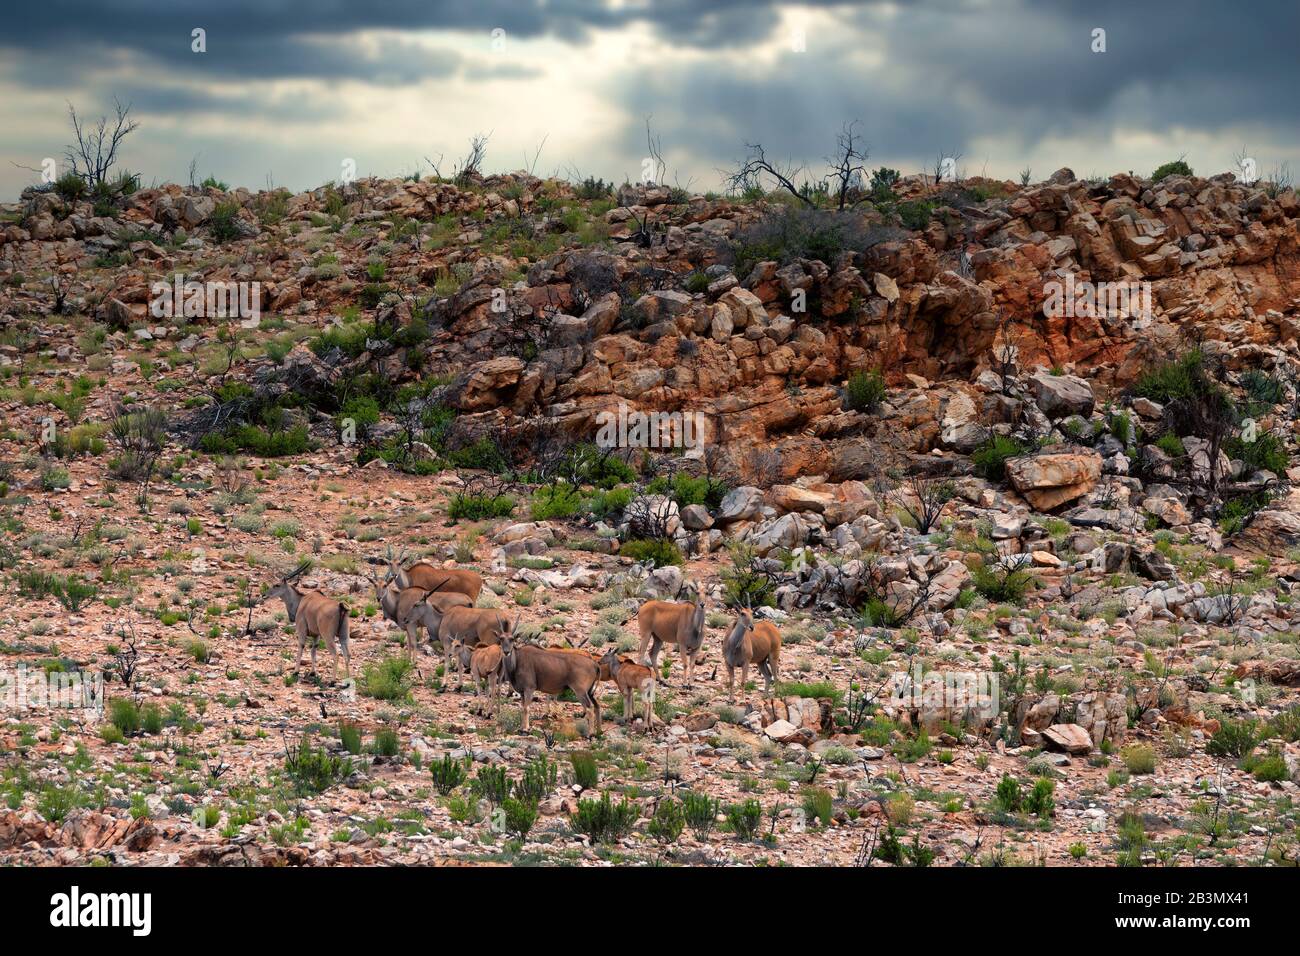 Un troupeau de terres sauvages avec de jeunes veaux sur un broussailles couvert de montagne du désert, certains animaux regardant vers la caméra le soleil se brisant par des drames Banque D'Images